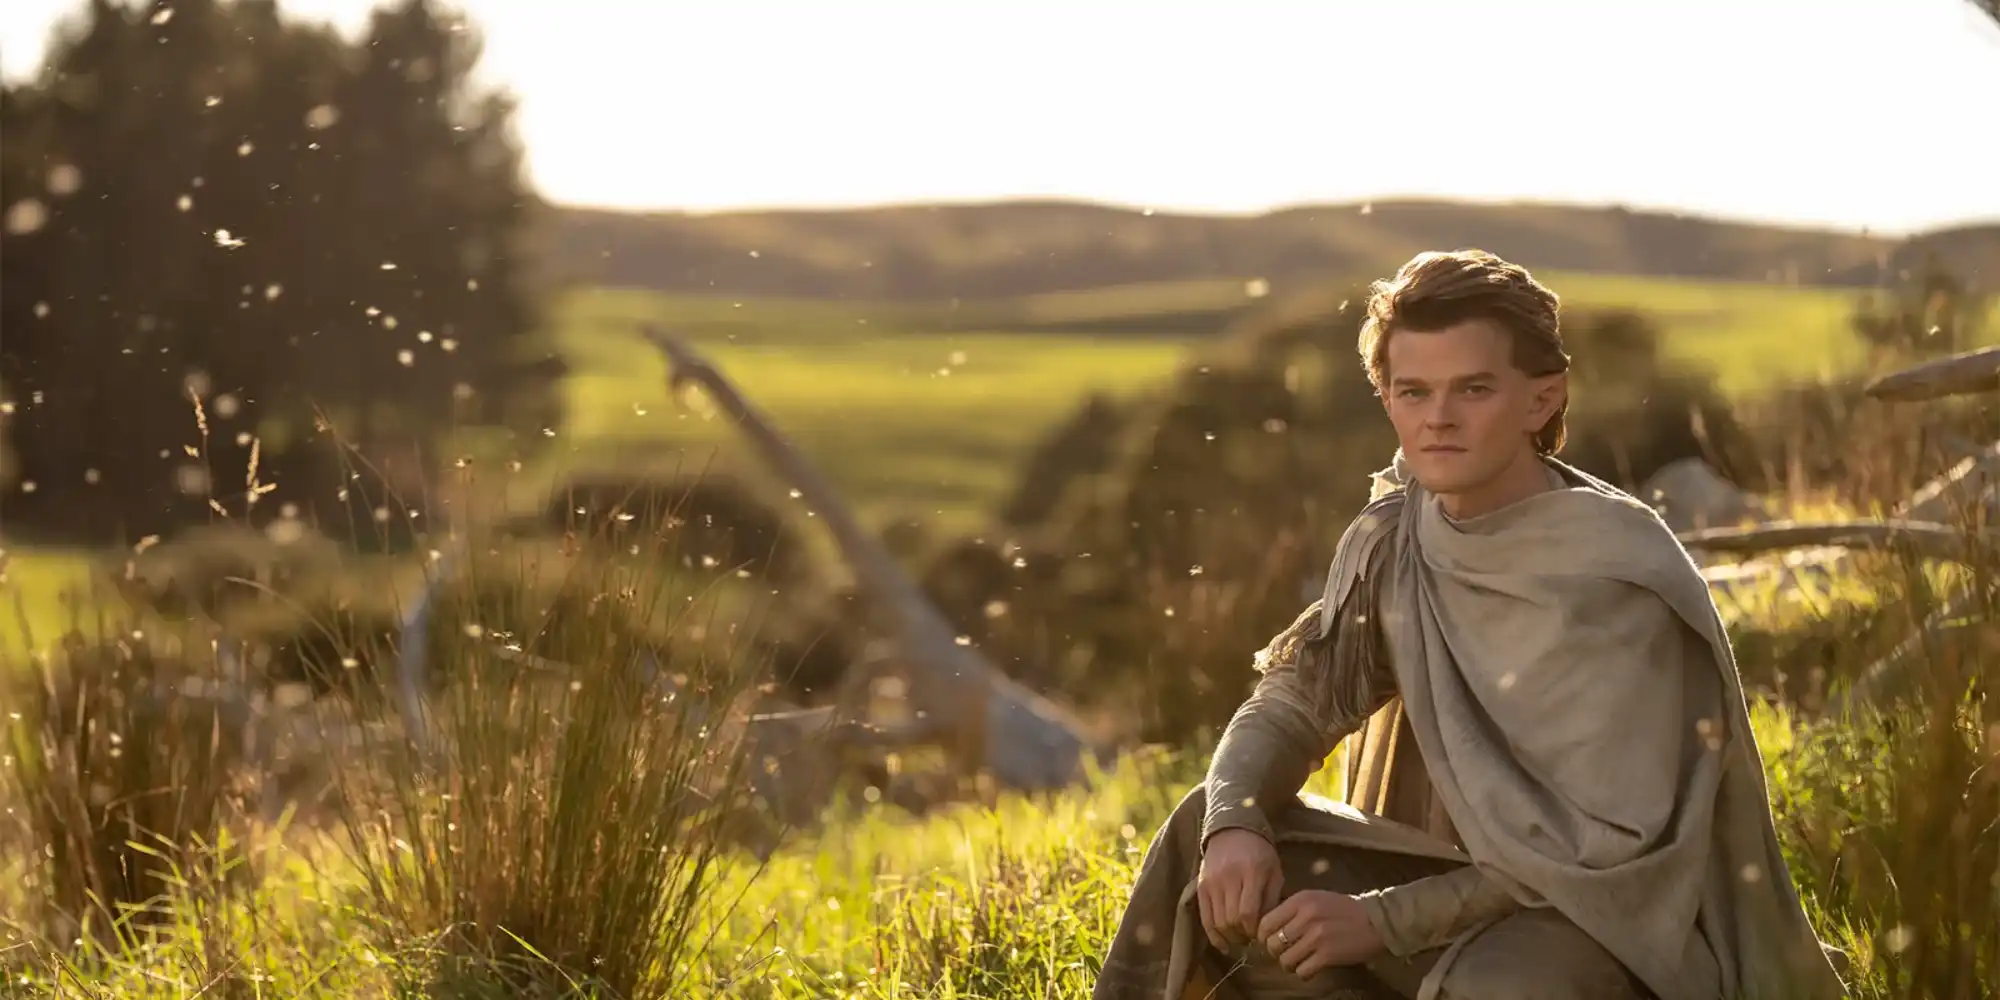 Elrond sitting in a field